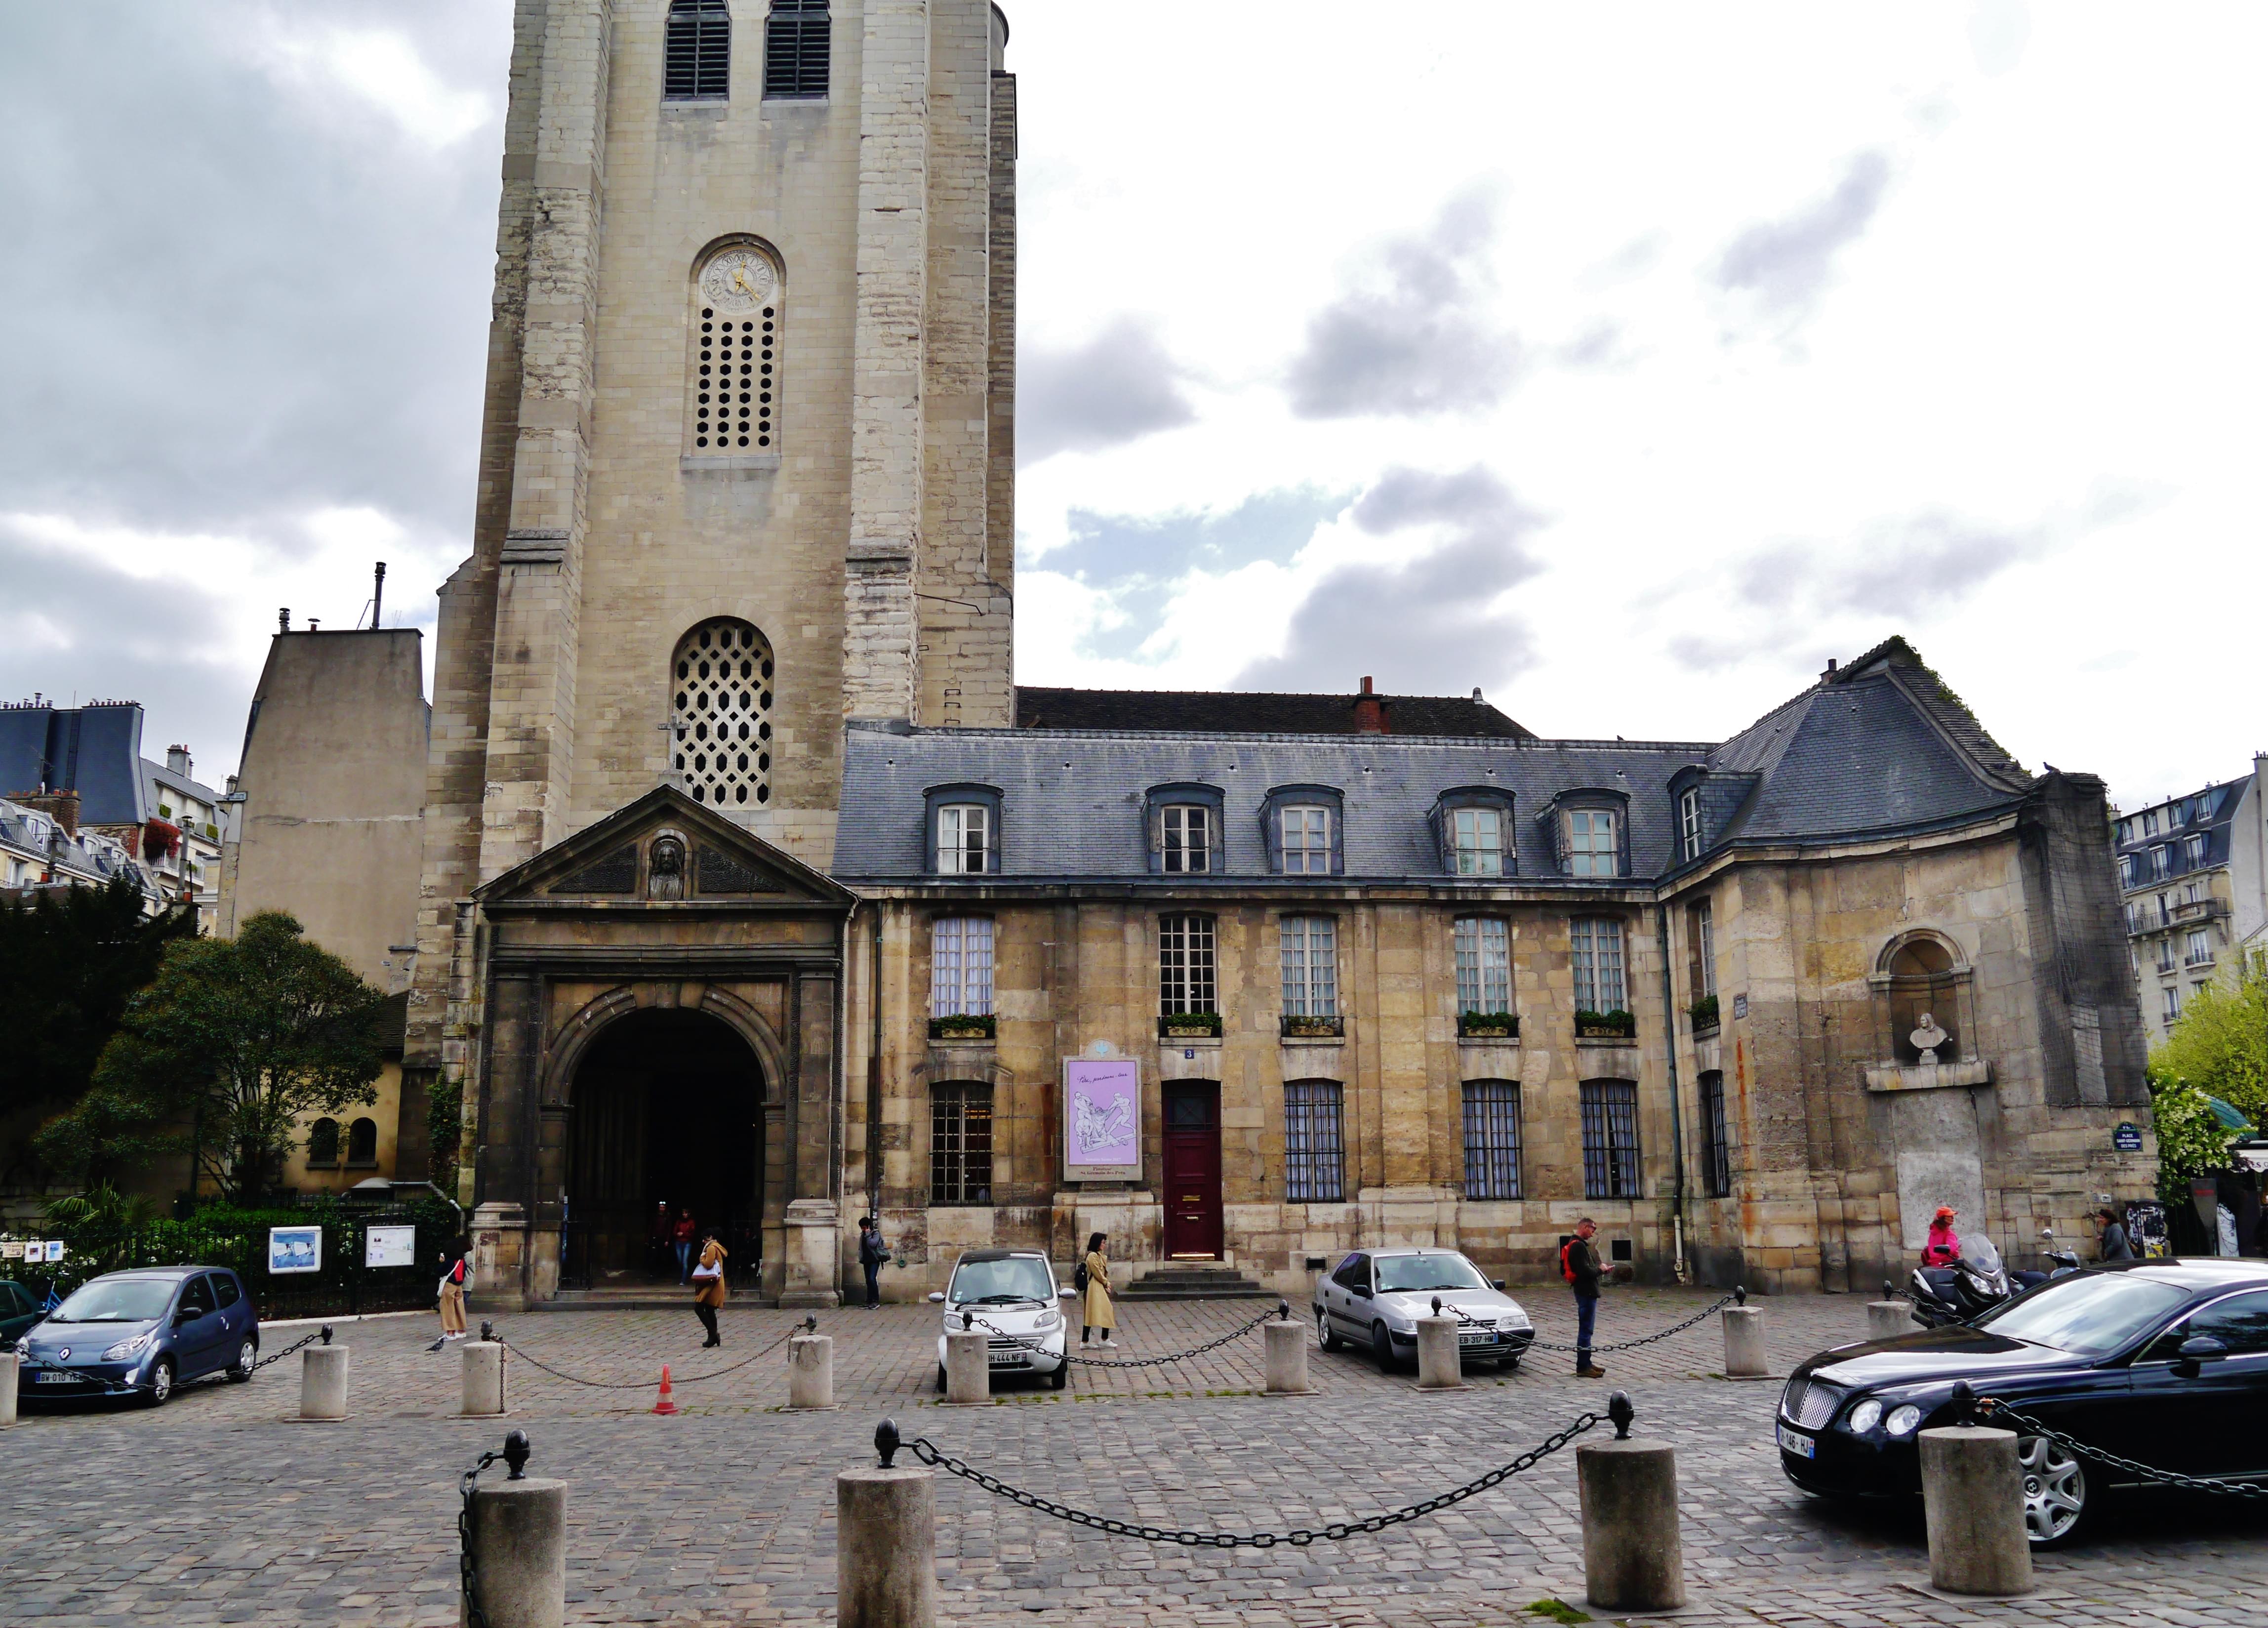 Saint-Germain-des-Pres